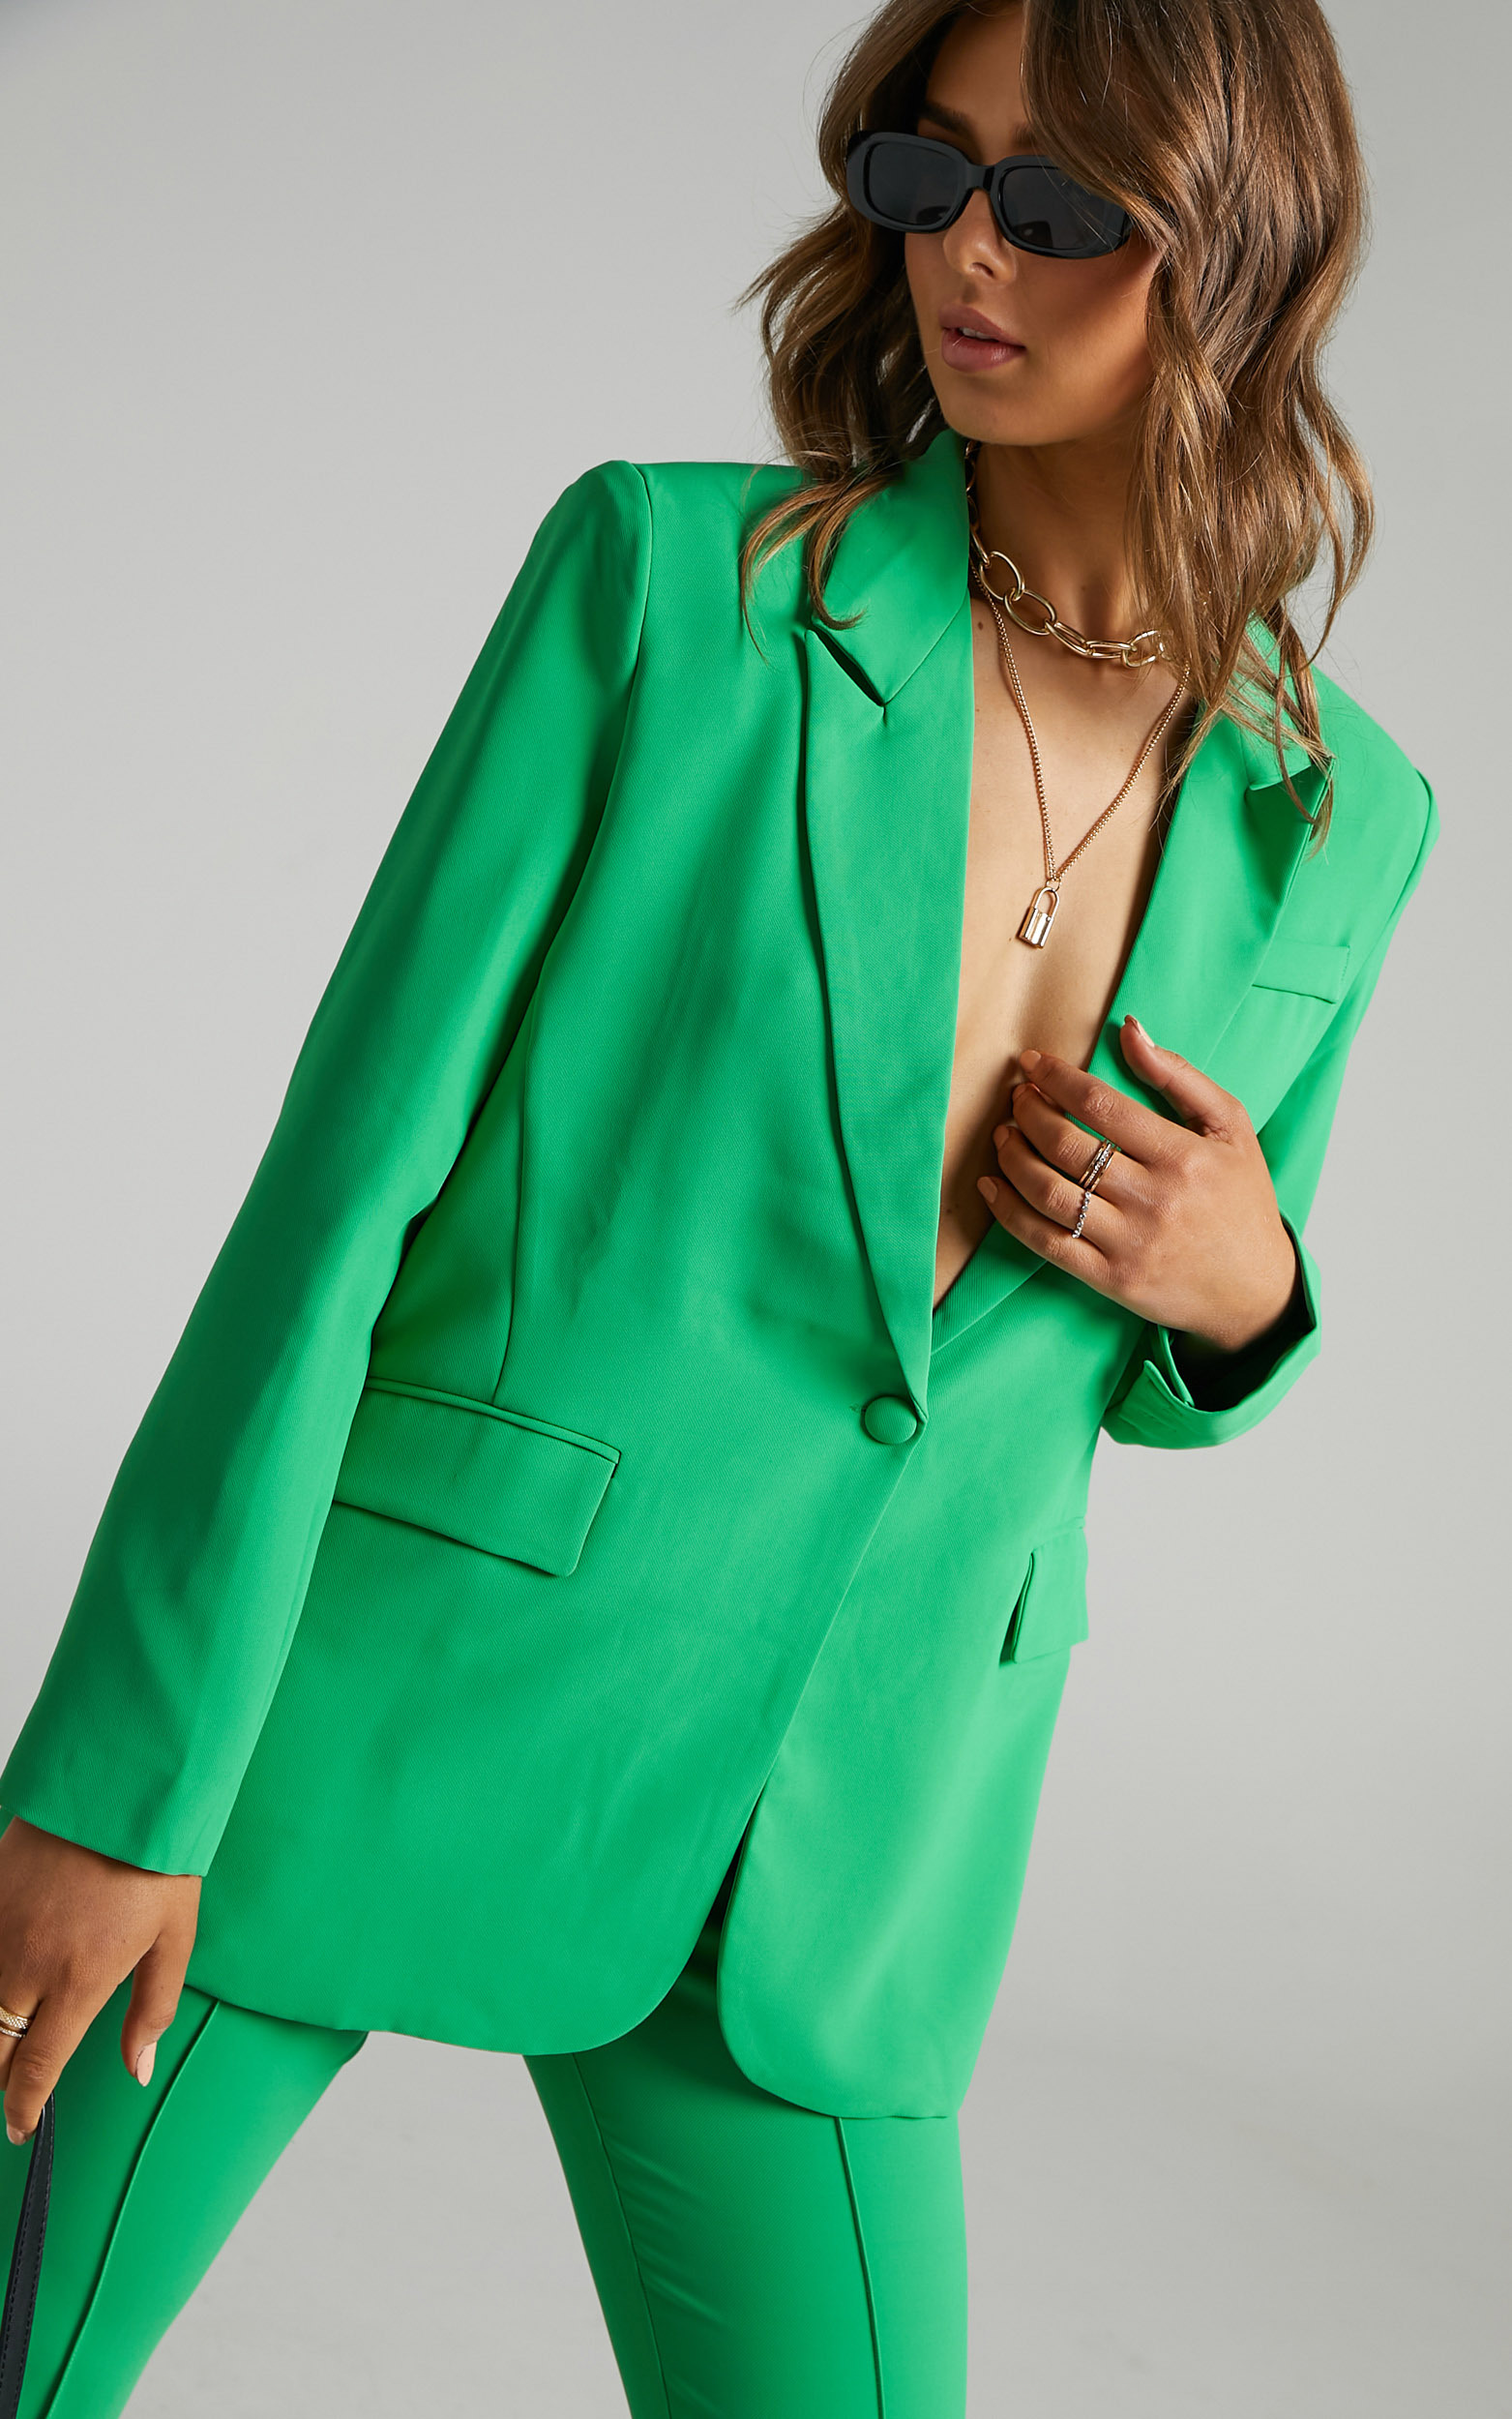 Michelle oversized plunge neckline Button Up Blazer in Green | Showpo